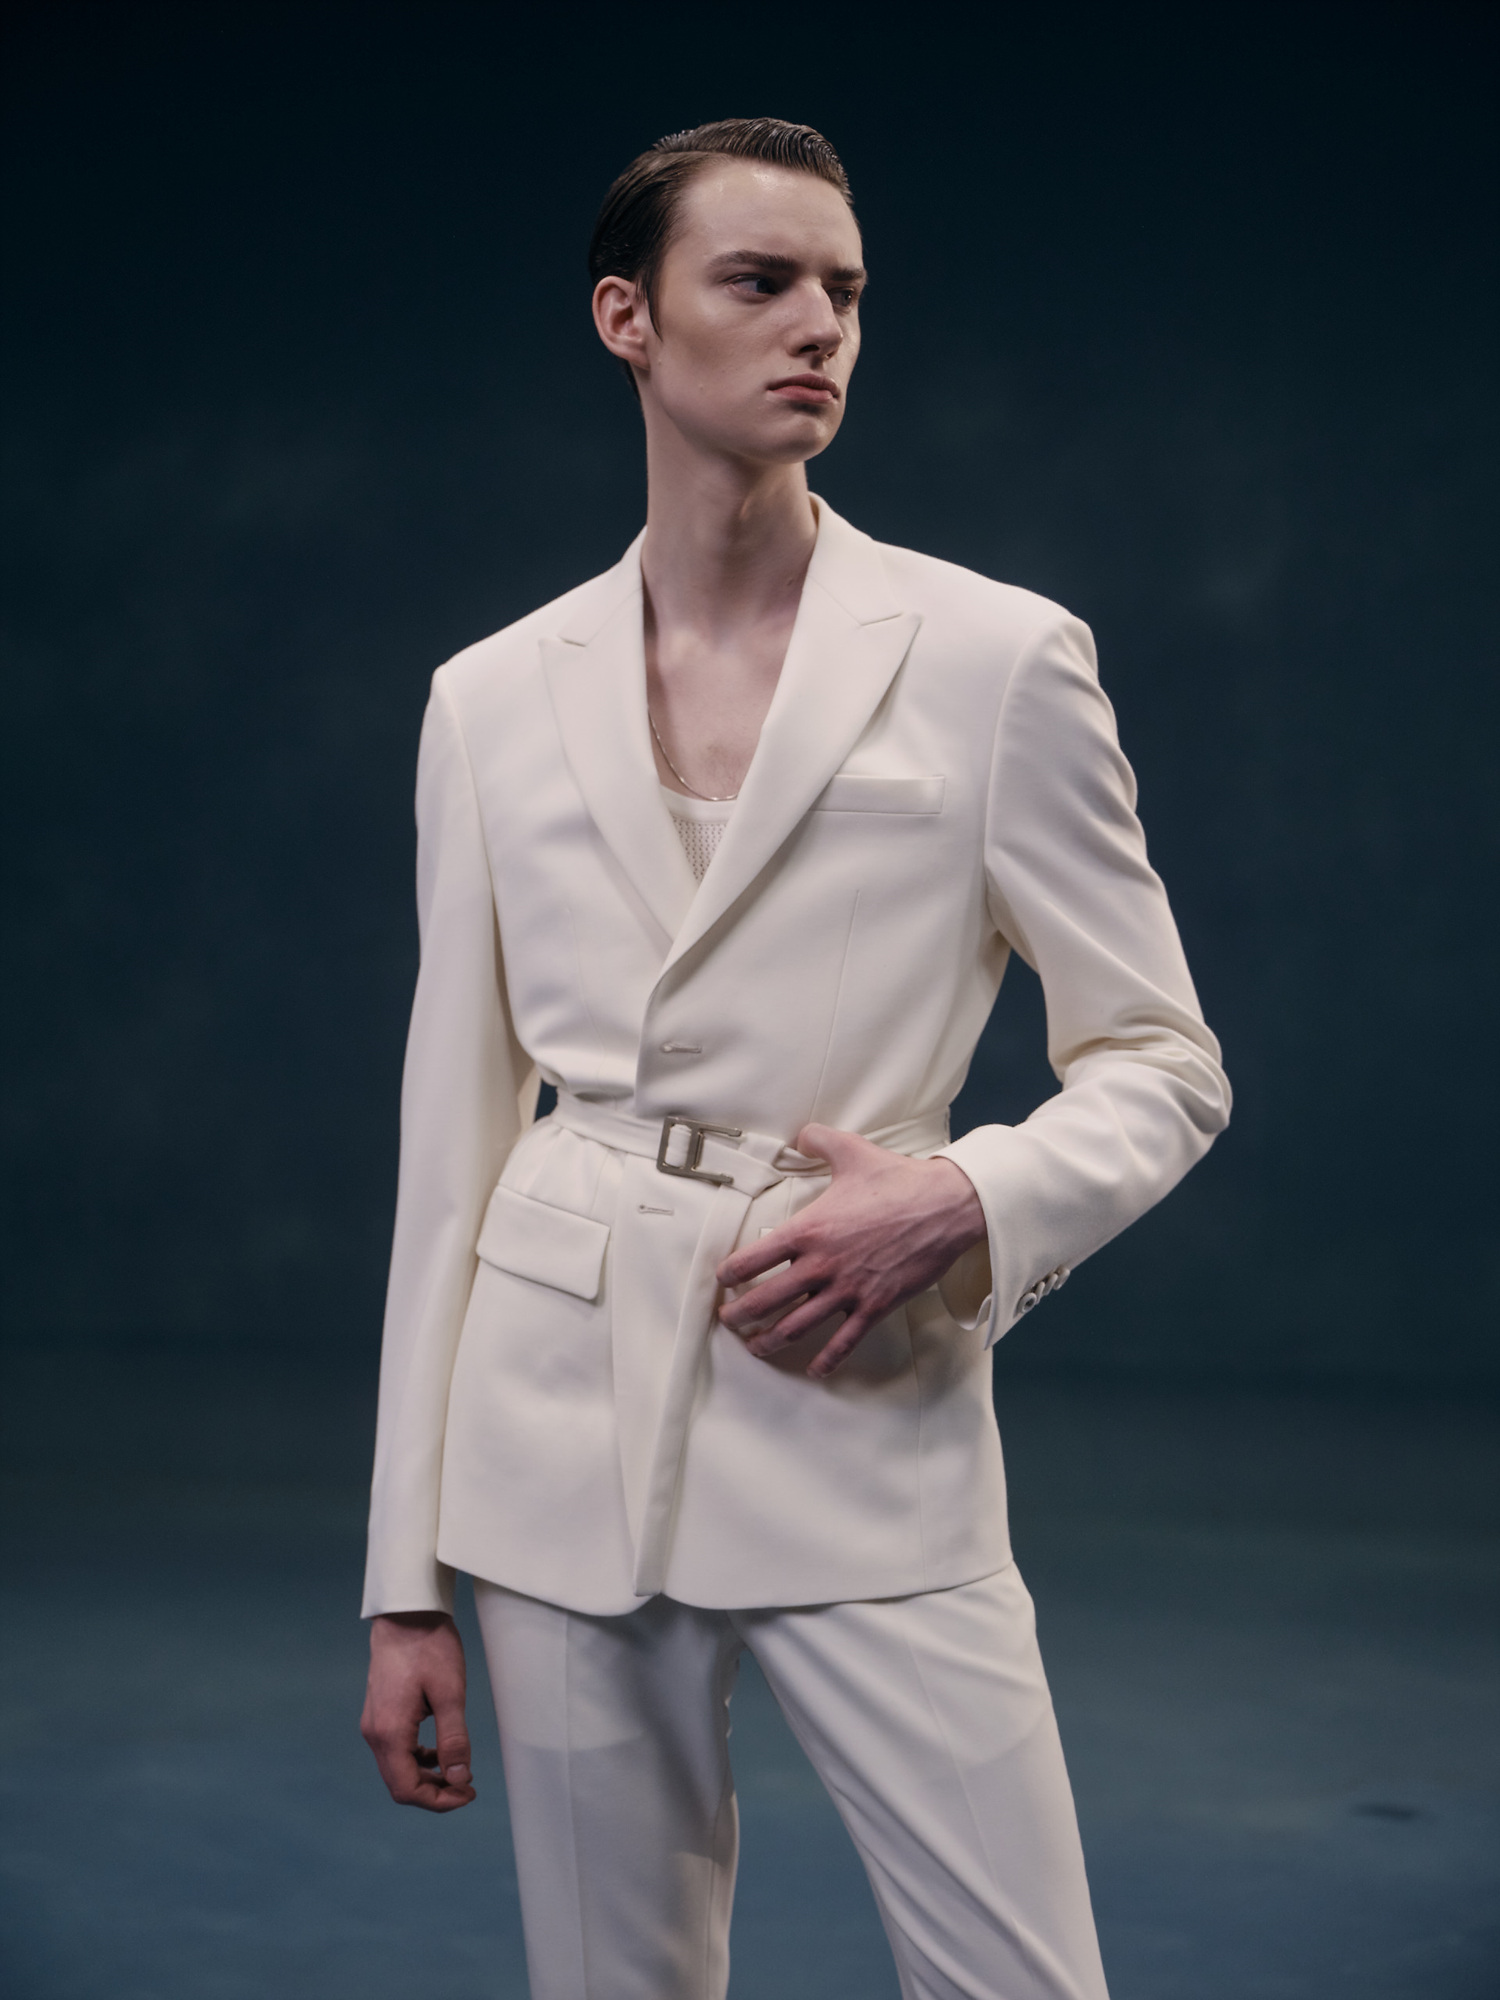 삼성물산 패션부문 남성복 브랜드 ‘갤럭시’는 디자이너 브랜드 ‘강혁’과 협업해 젠더리스적 특성이 두드러진 정장을 제안했다. 삼성물산 제공